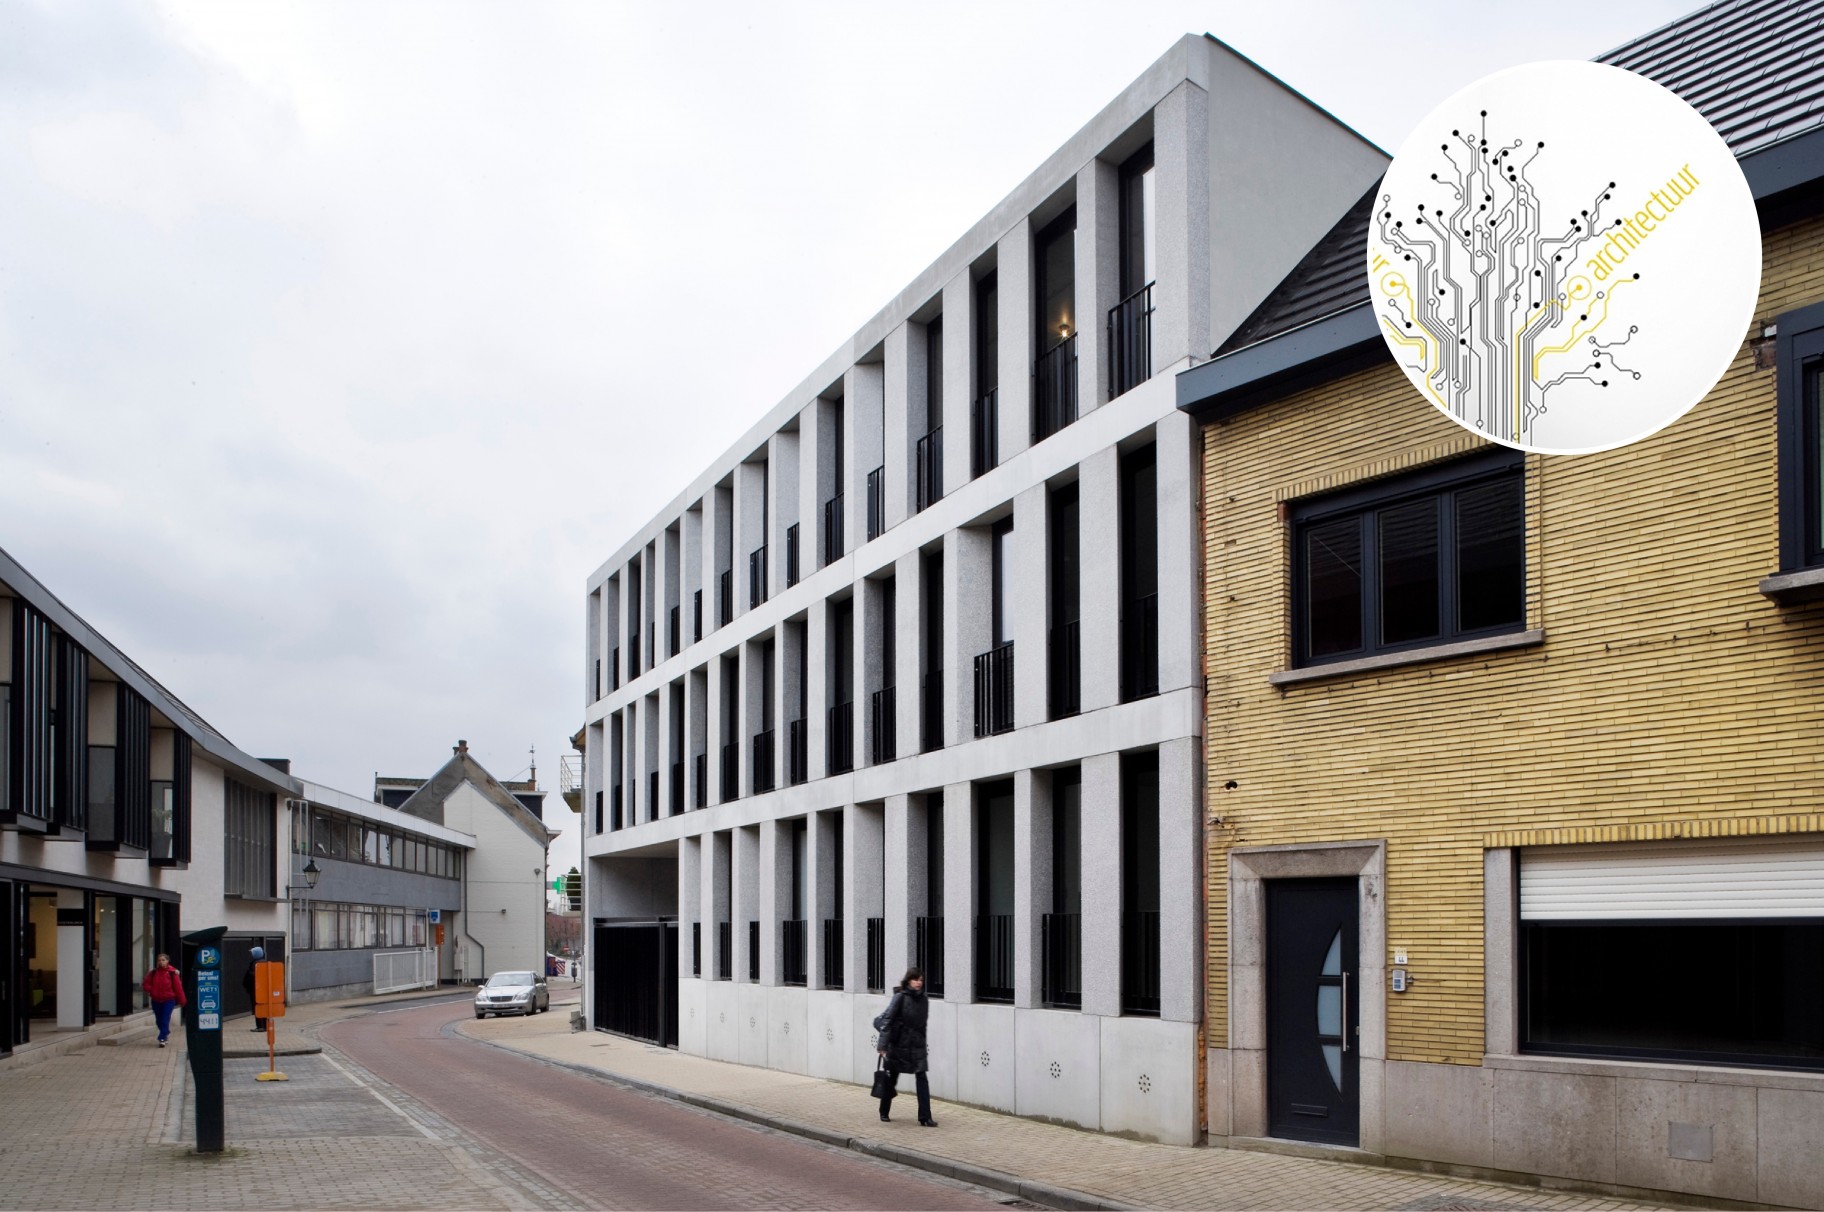 Appartementen Oosterlinck Wetteren krijgt eervolle vermelding bij Provinciale Architectuurprijzen Oost-Vlaanderen 2013